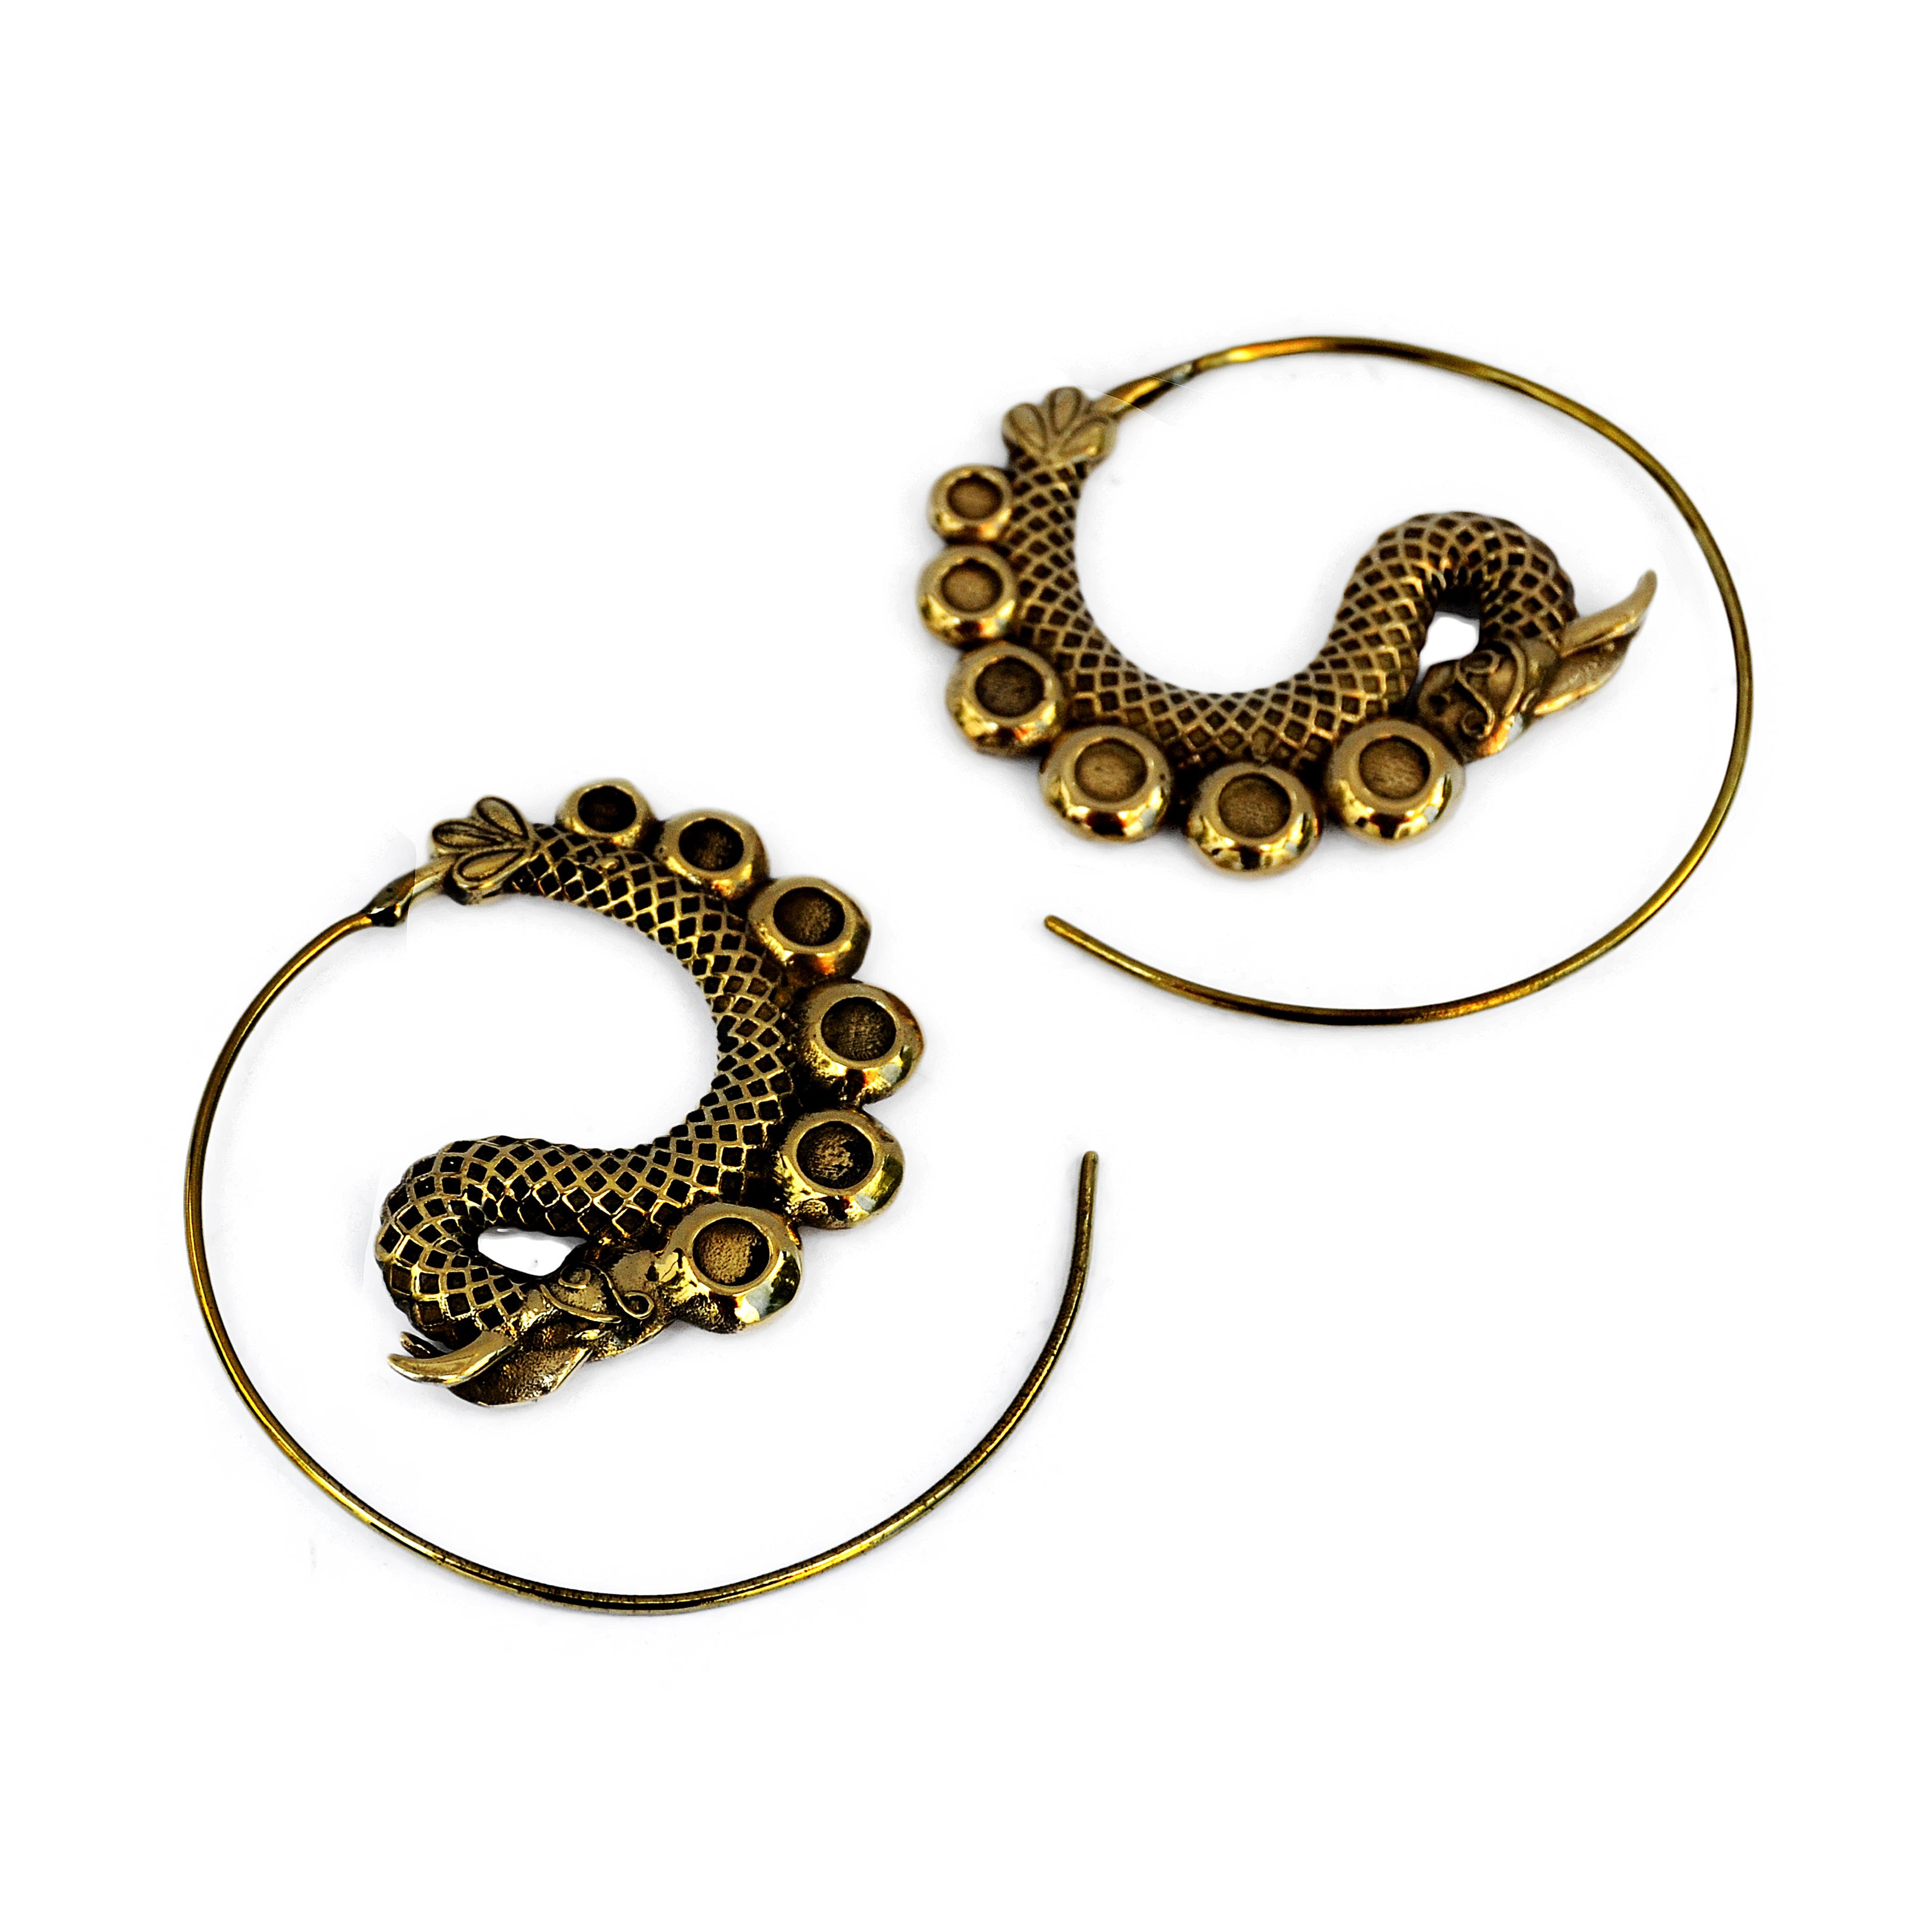 Golden dragon spiral earrings on white background